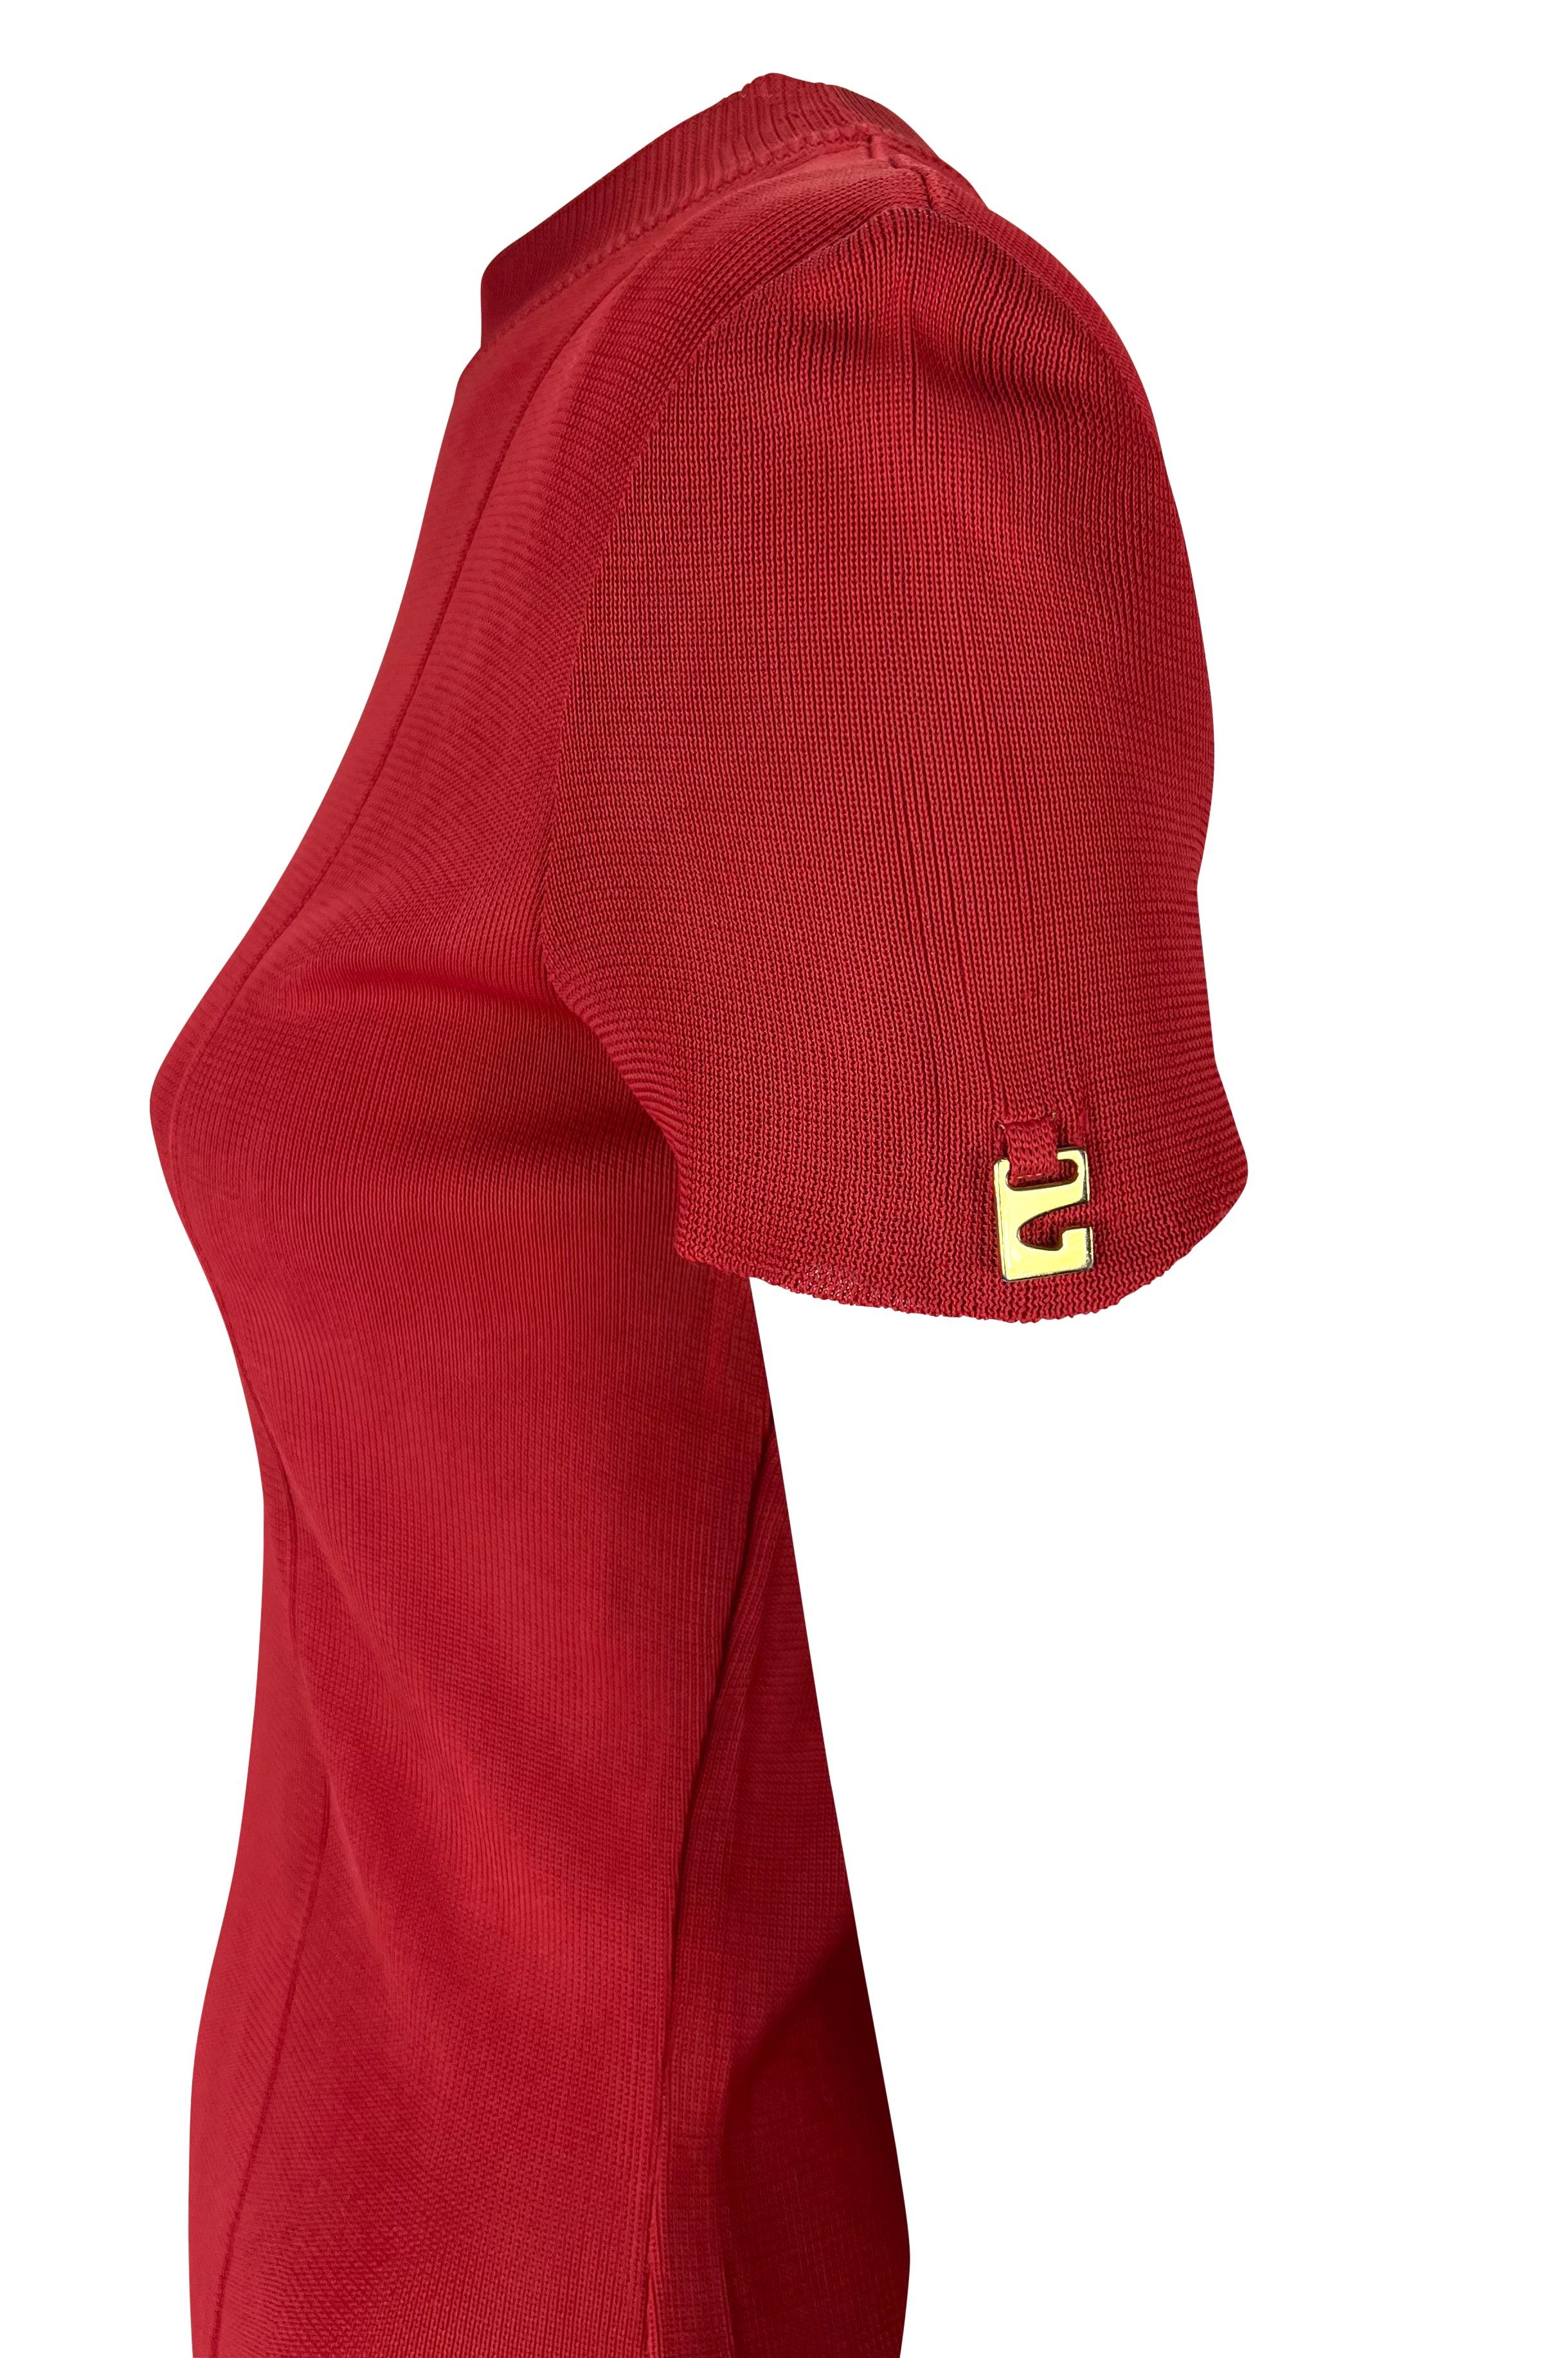 Wir präsentieren ein leuchtend rotes Strickoberteil von Gucci, entworfen von Tom Ford. Dieses Stretch-T-Shirt aus der Frühjahr/Sommer-Kollektion 1997 ist aus gestrickter Viskose gefertigt und hat einen Rundhalsausschnitt. Das Oberteil ist mit einem